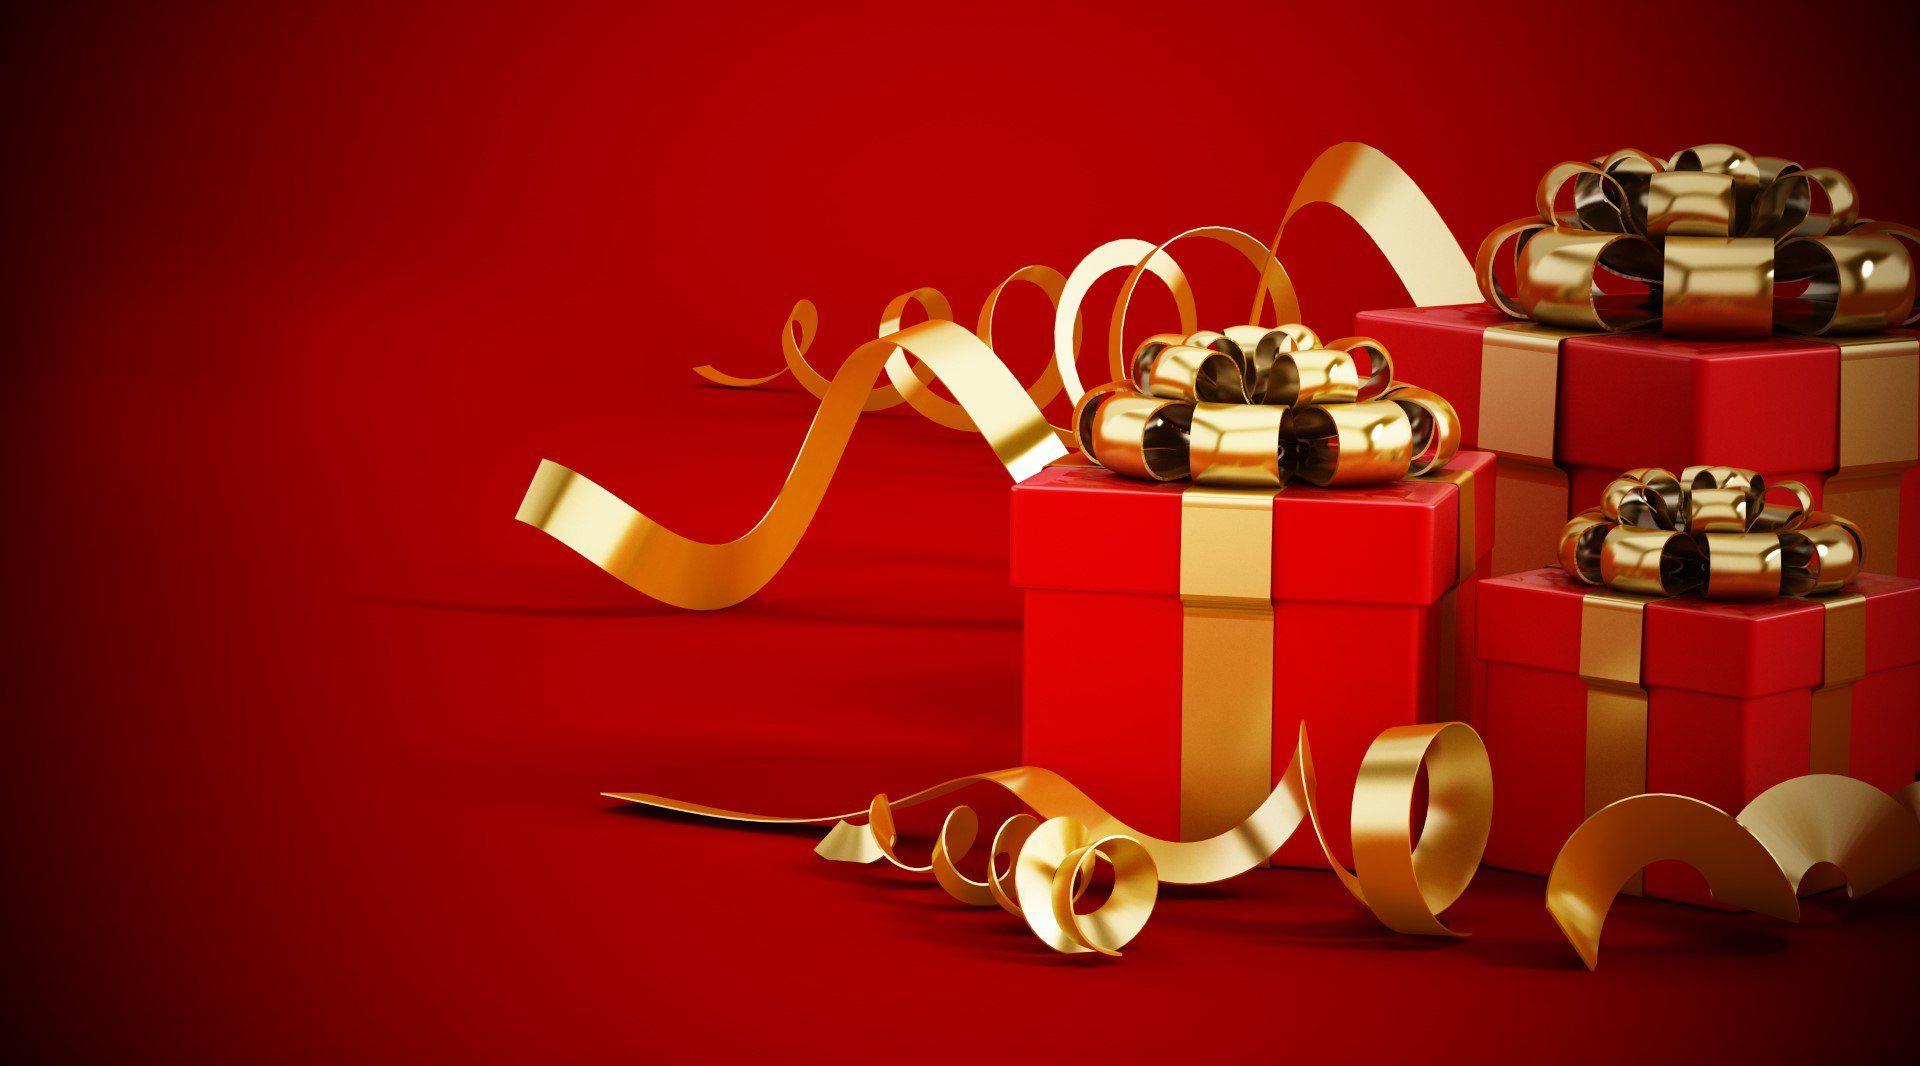 Boîte-cadeau - Suggestions de cadeaux sur mesure pour tout destinataire